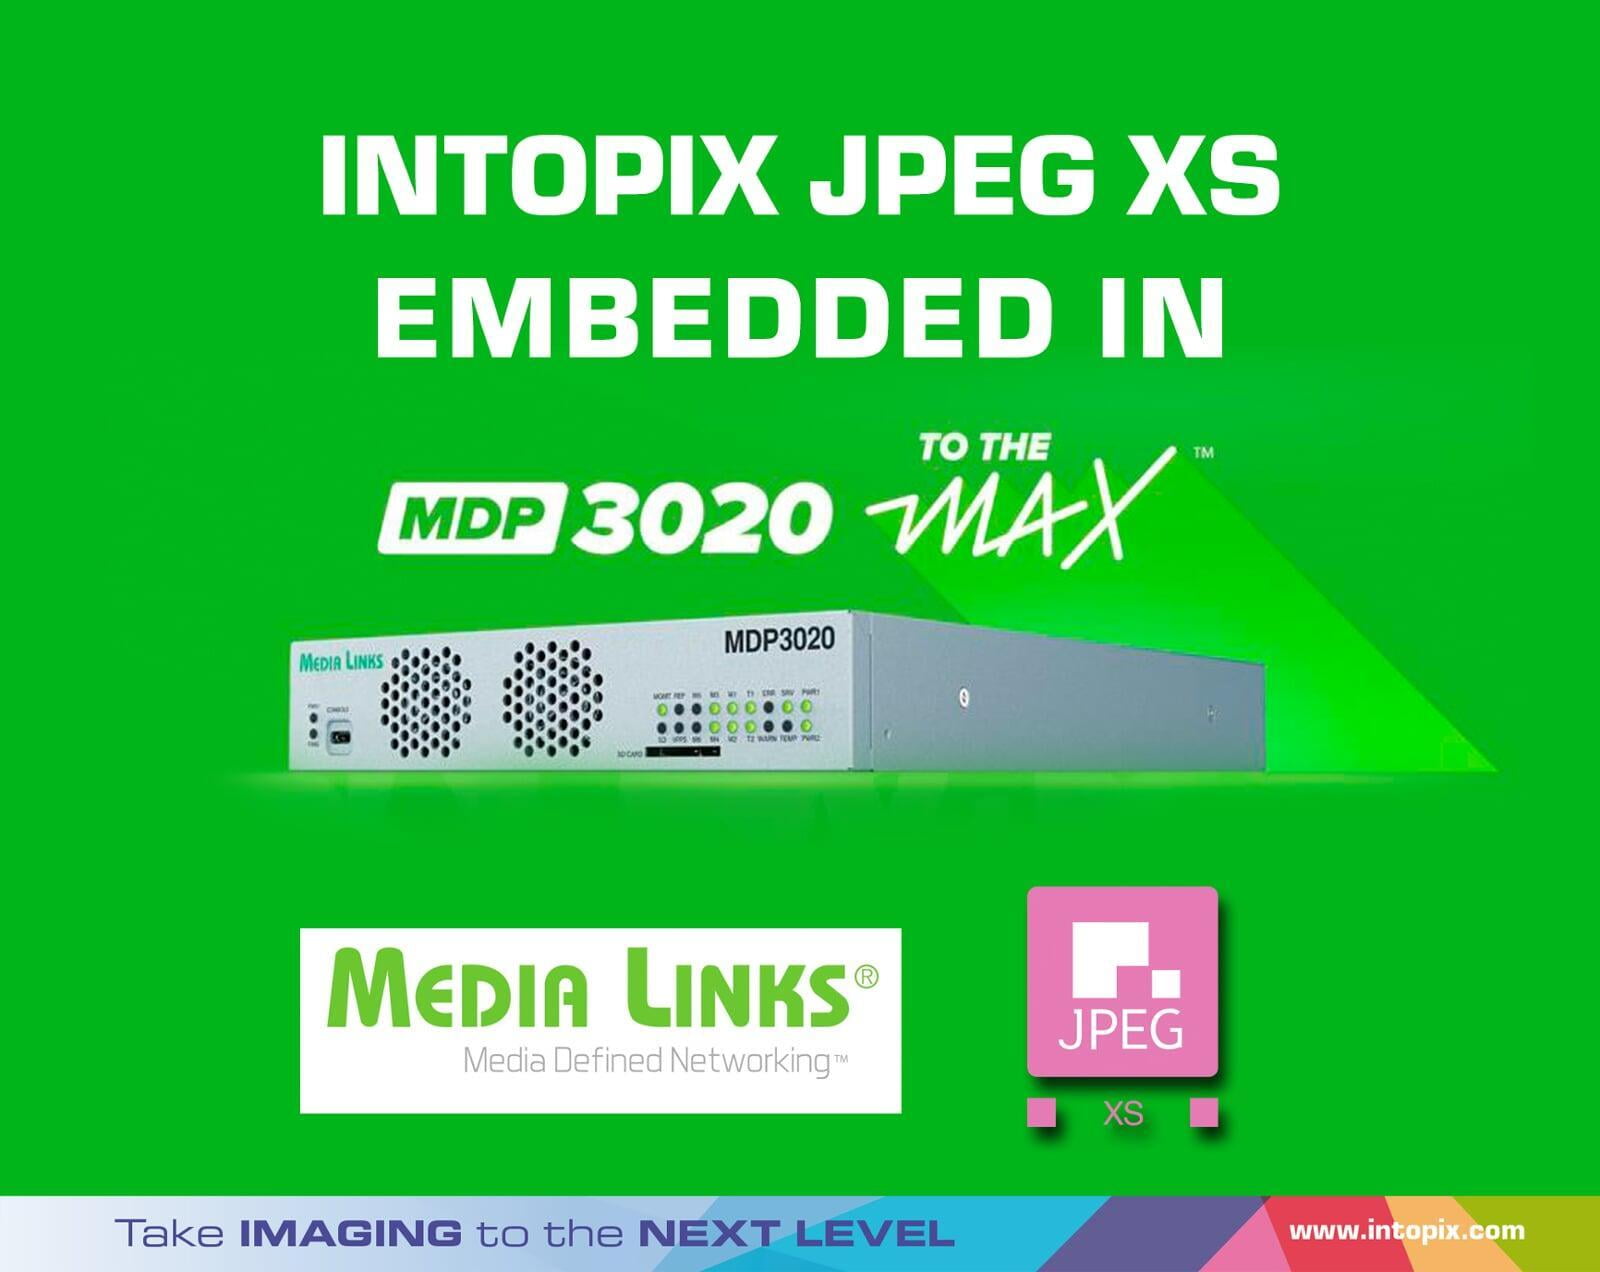 JPEG XSをMDP3020 MAXに組み込み、ライブコンテンツへの飽くなき要求に応えます。